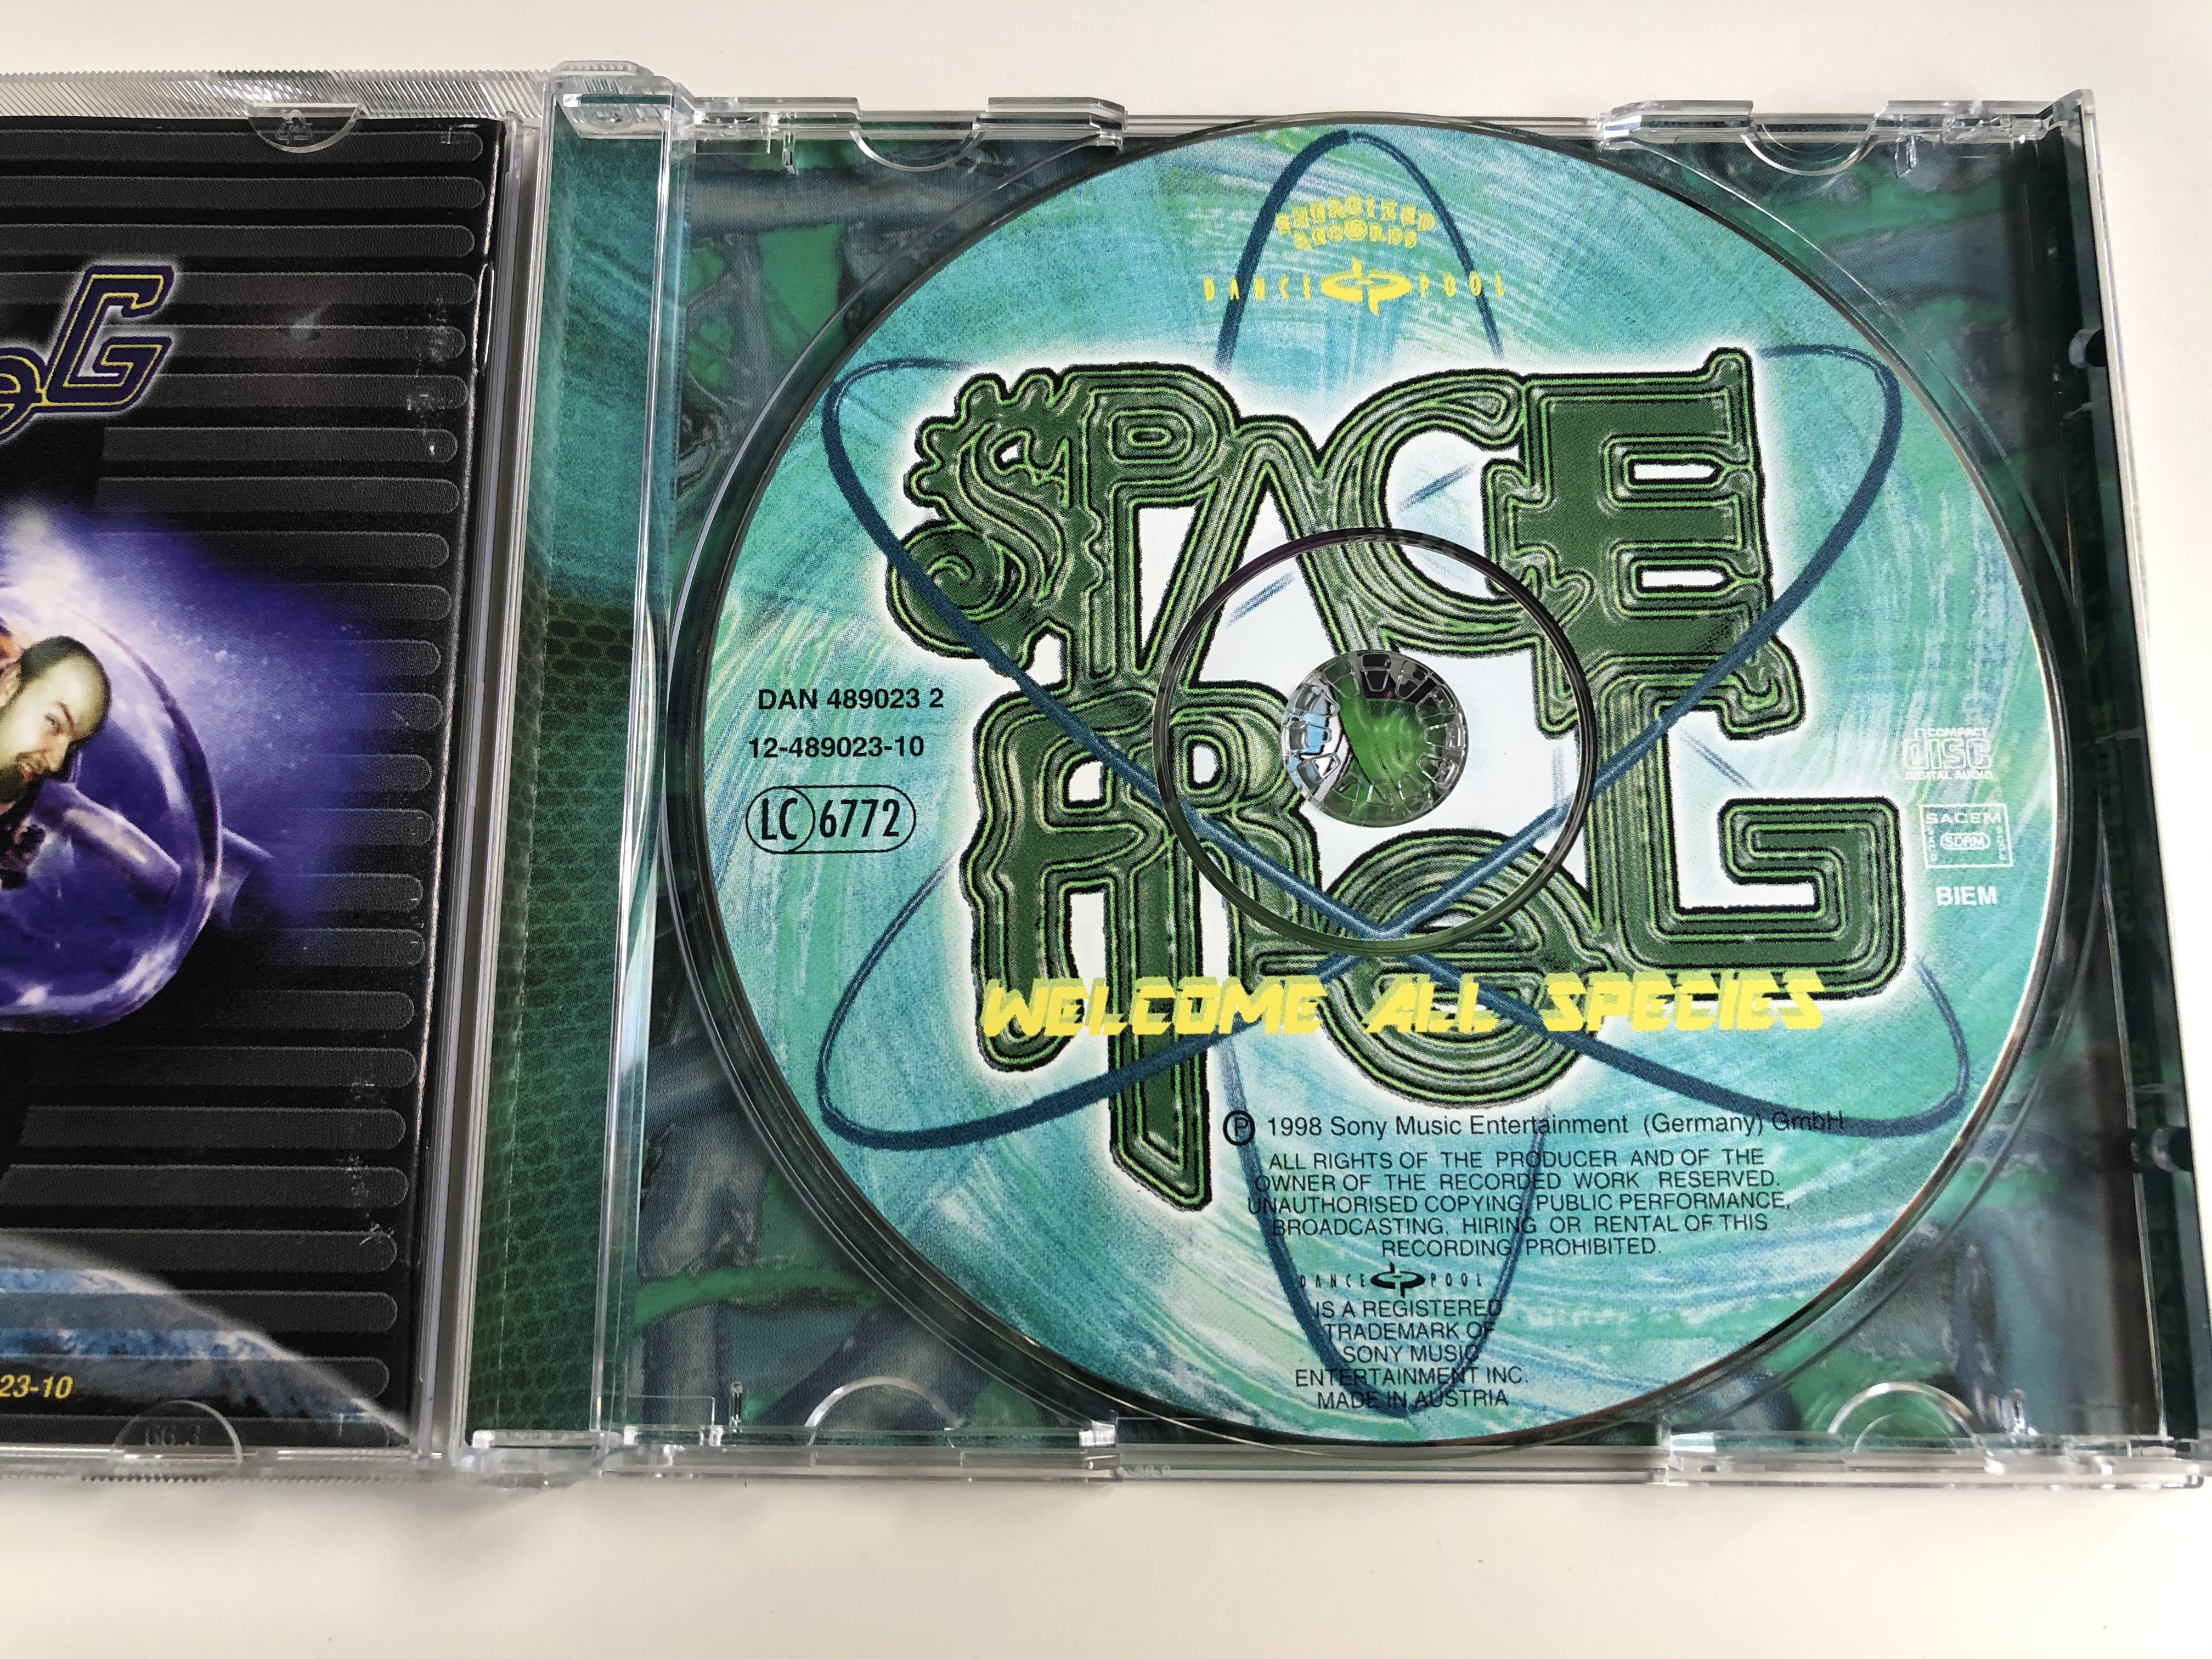 space-frog-welcome-all-species-dance-pool-audio-cd-1998-489023-2-9-.jpg